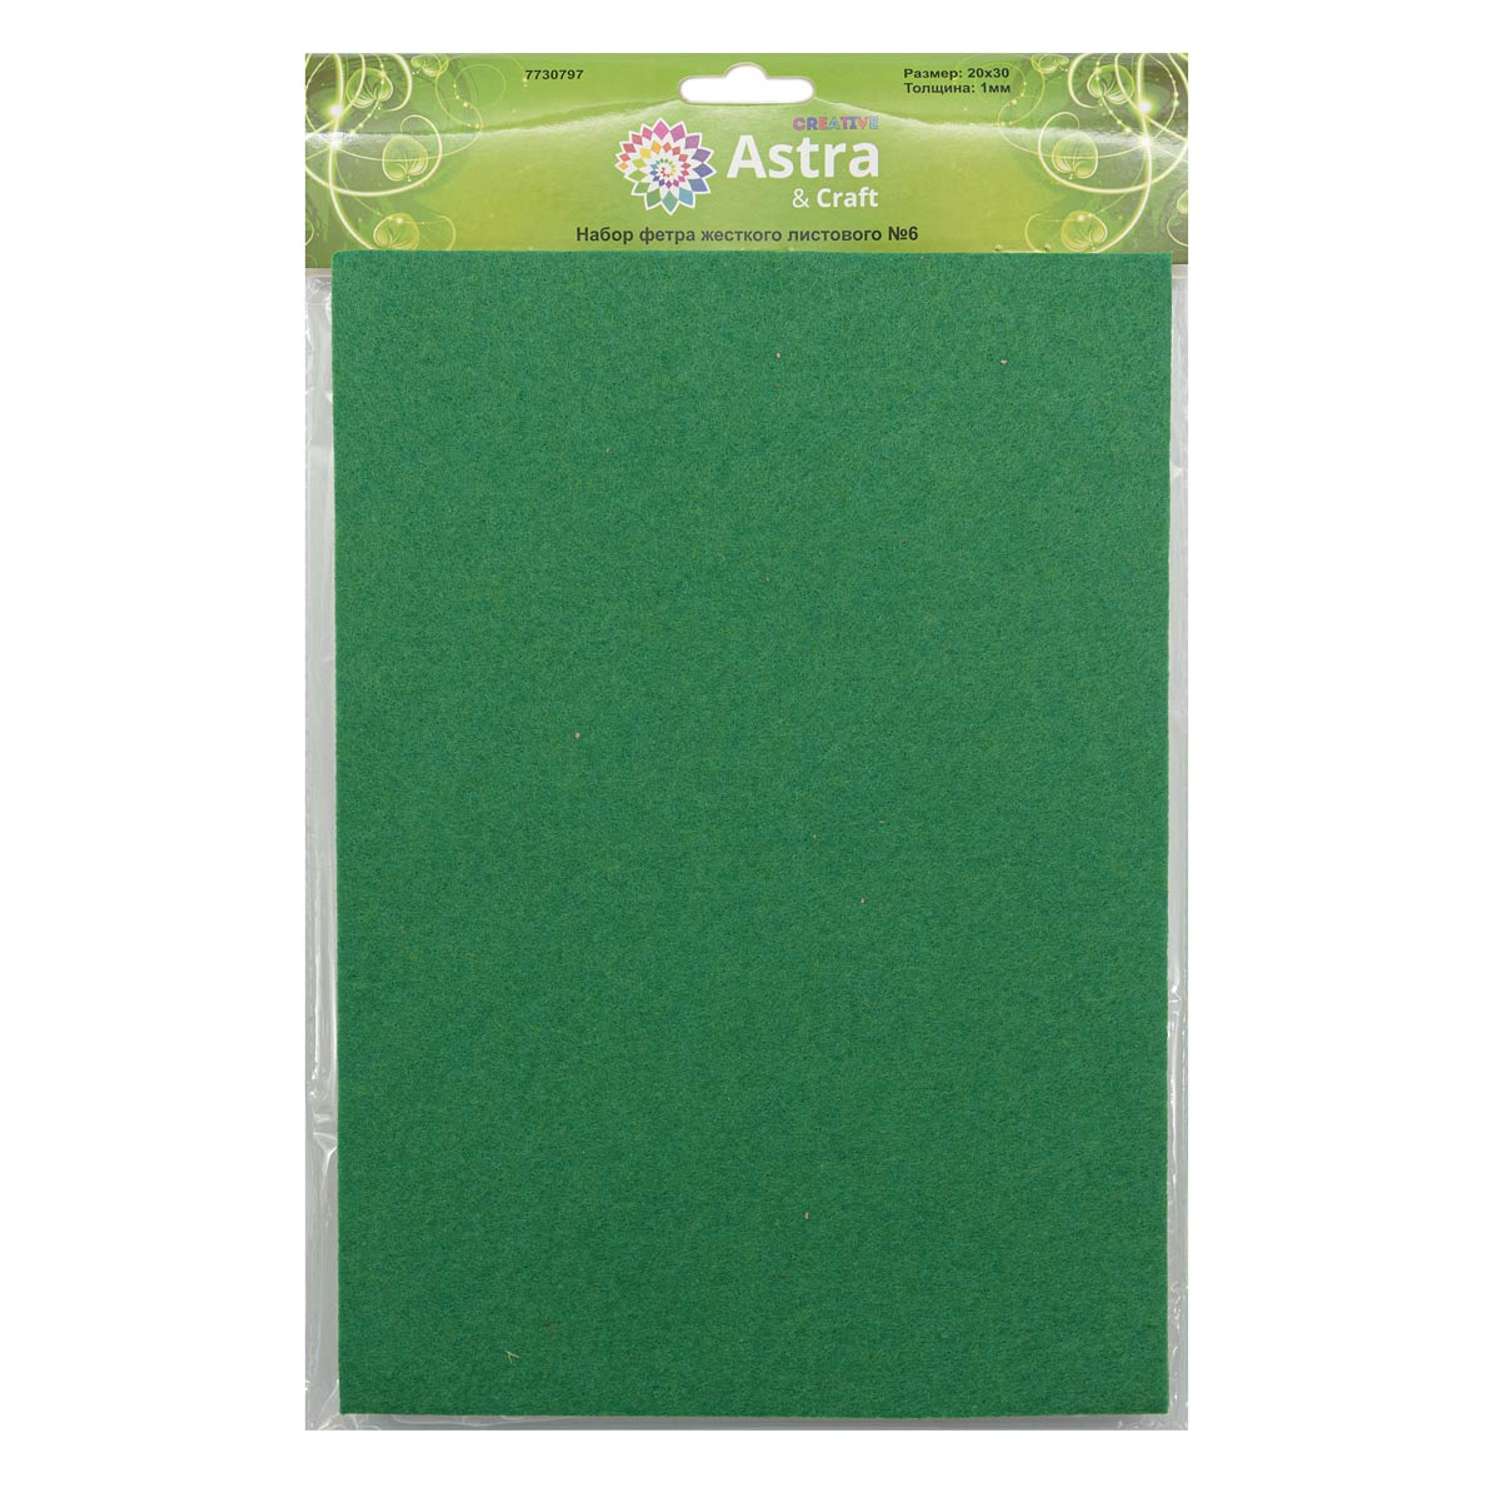 Фетр Astra Craft Листовой жесткий толщина 1 мм размер 20 на 30 см 12шт цвет салатовый - фото 3